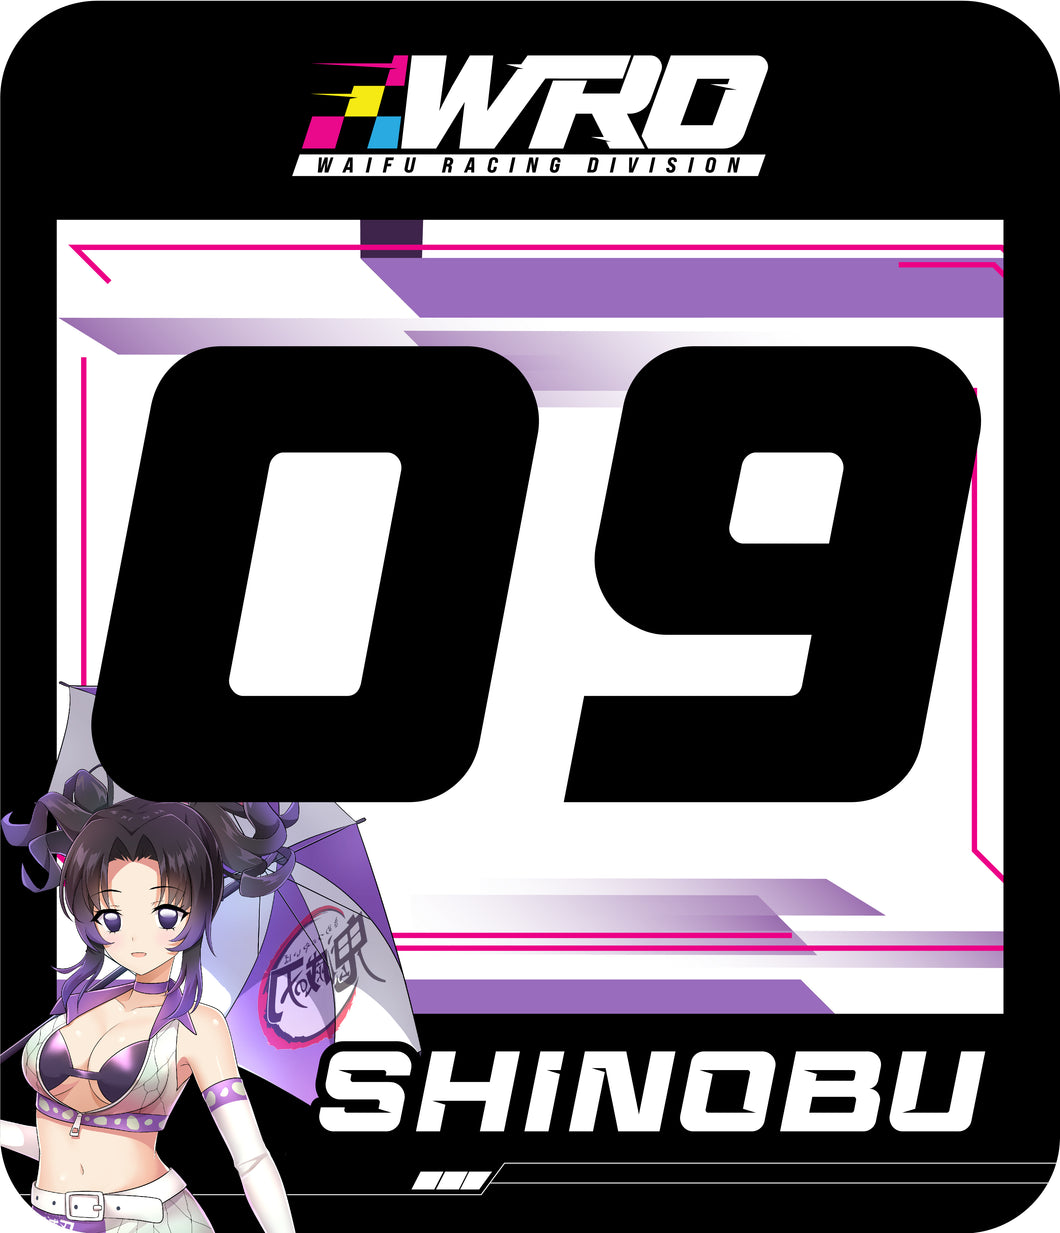 Shinobu Track Number